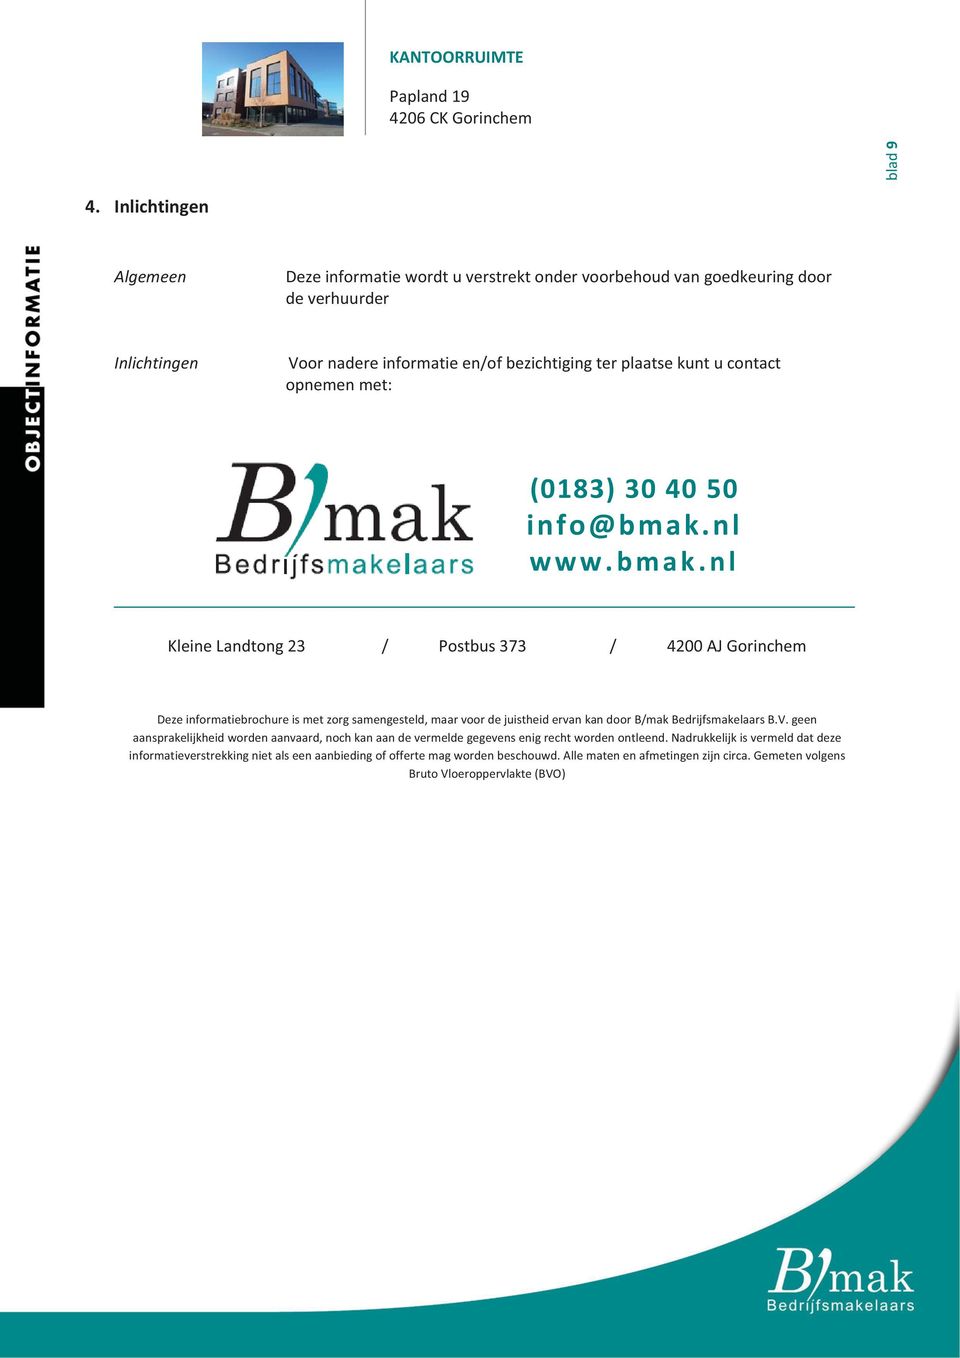 Voornadereinformatieen/ofbezichtigingterplaatsekuntucontact opnemenmet: (0183)4050 info@bmak.